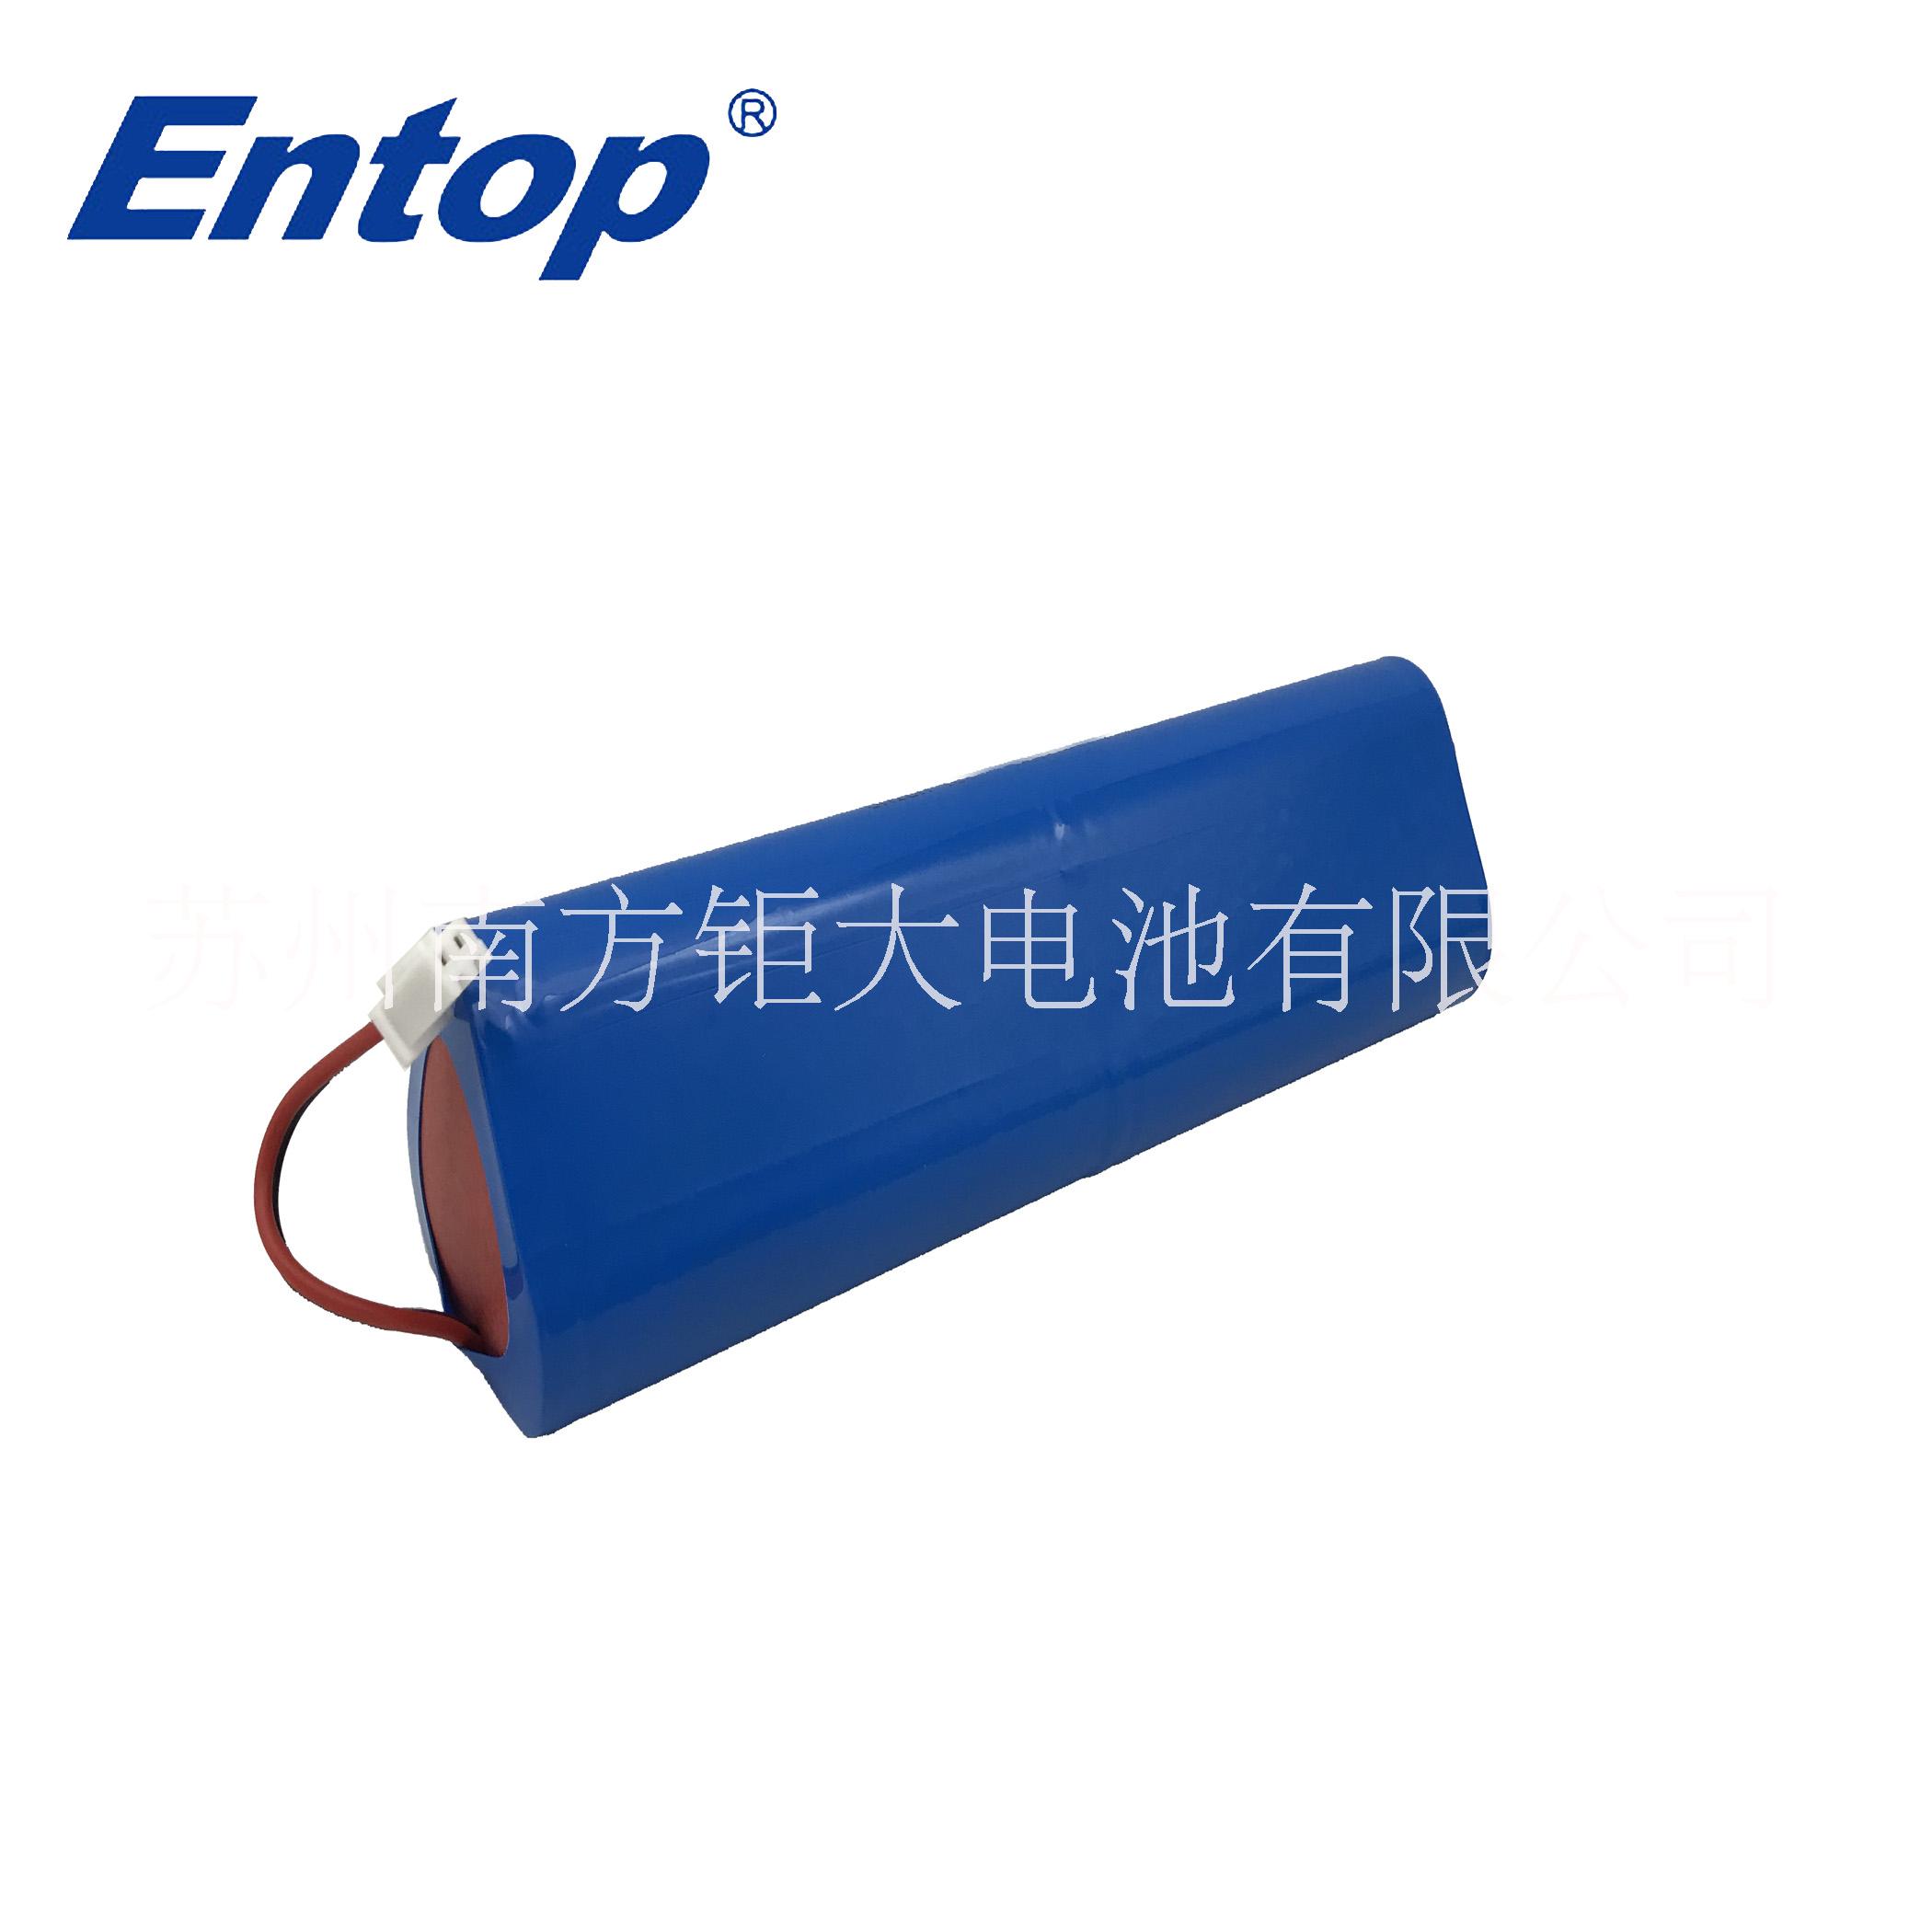 上海动力电池生产厂商|锂电池公司有哪些|锂电池组公司